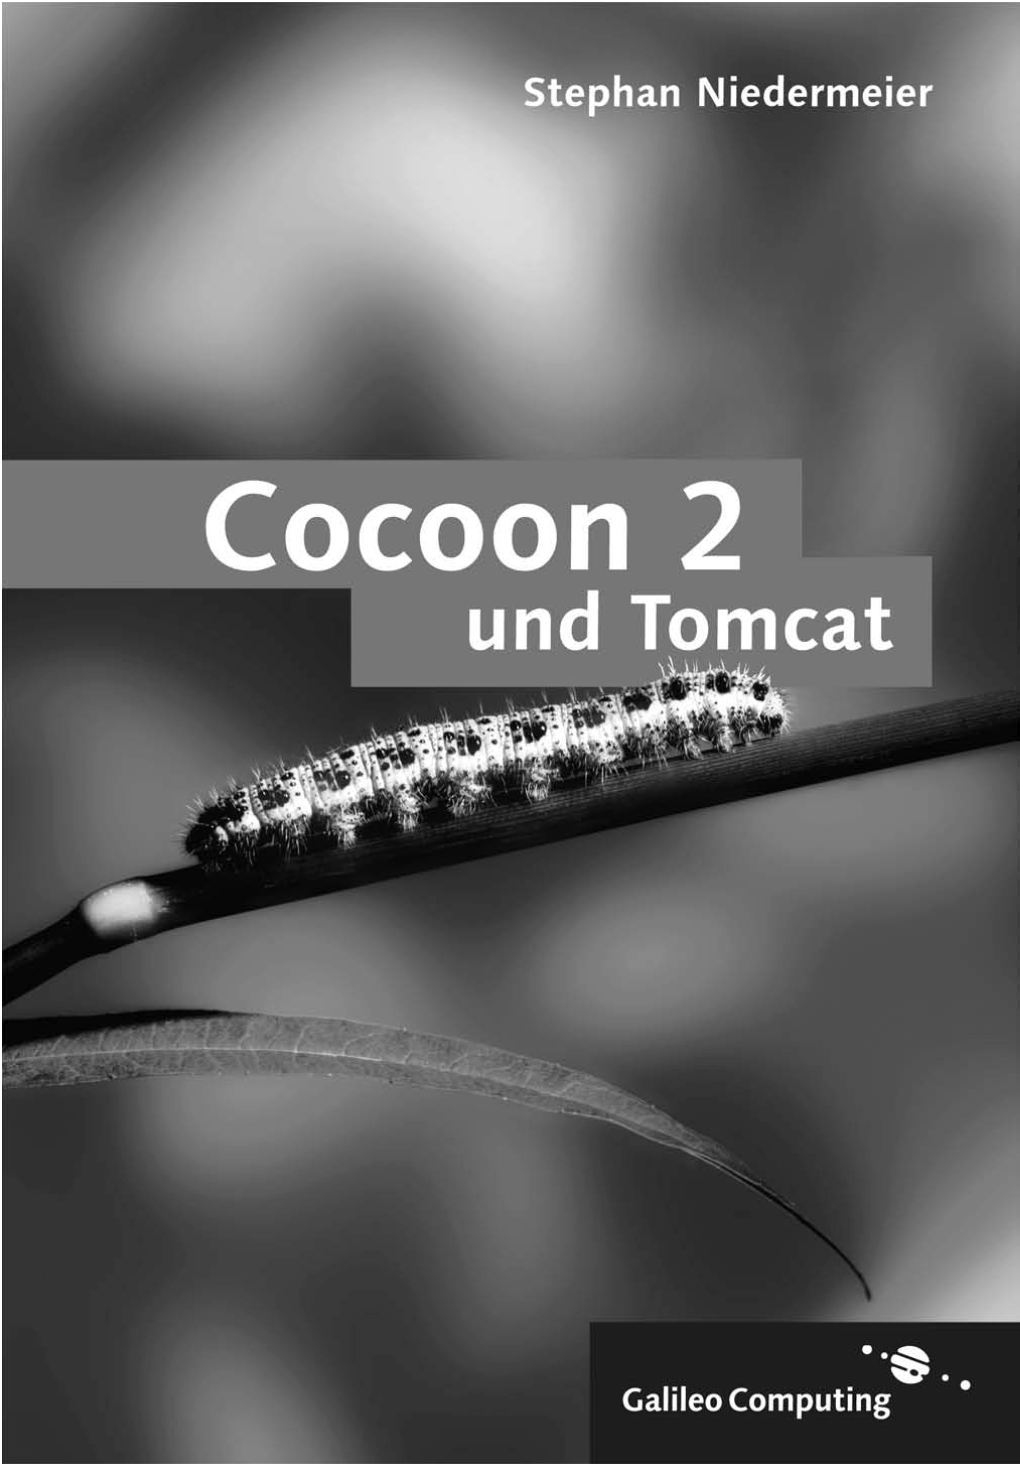 Cocoon 2 Und Tomcat